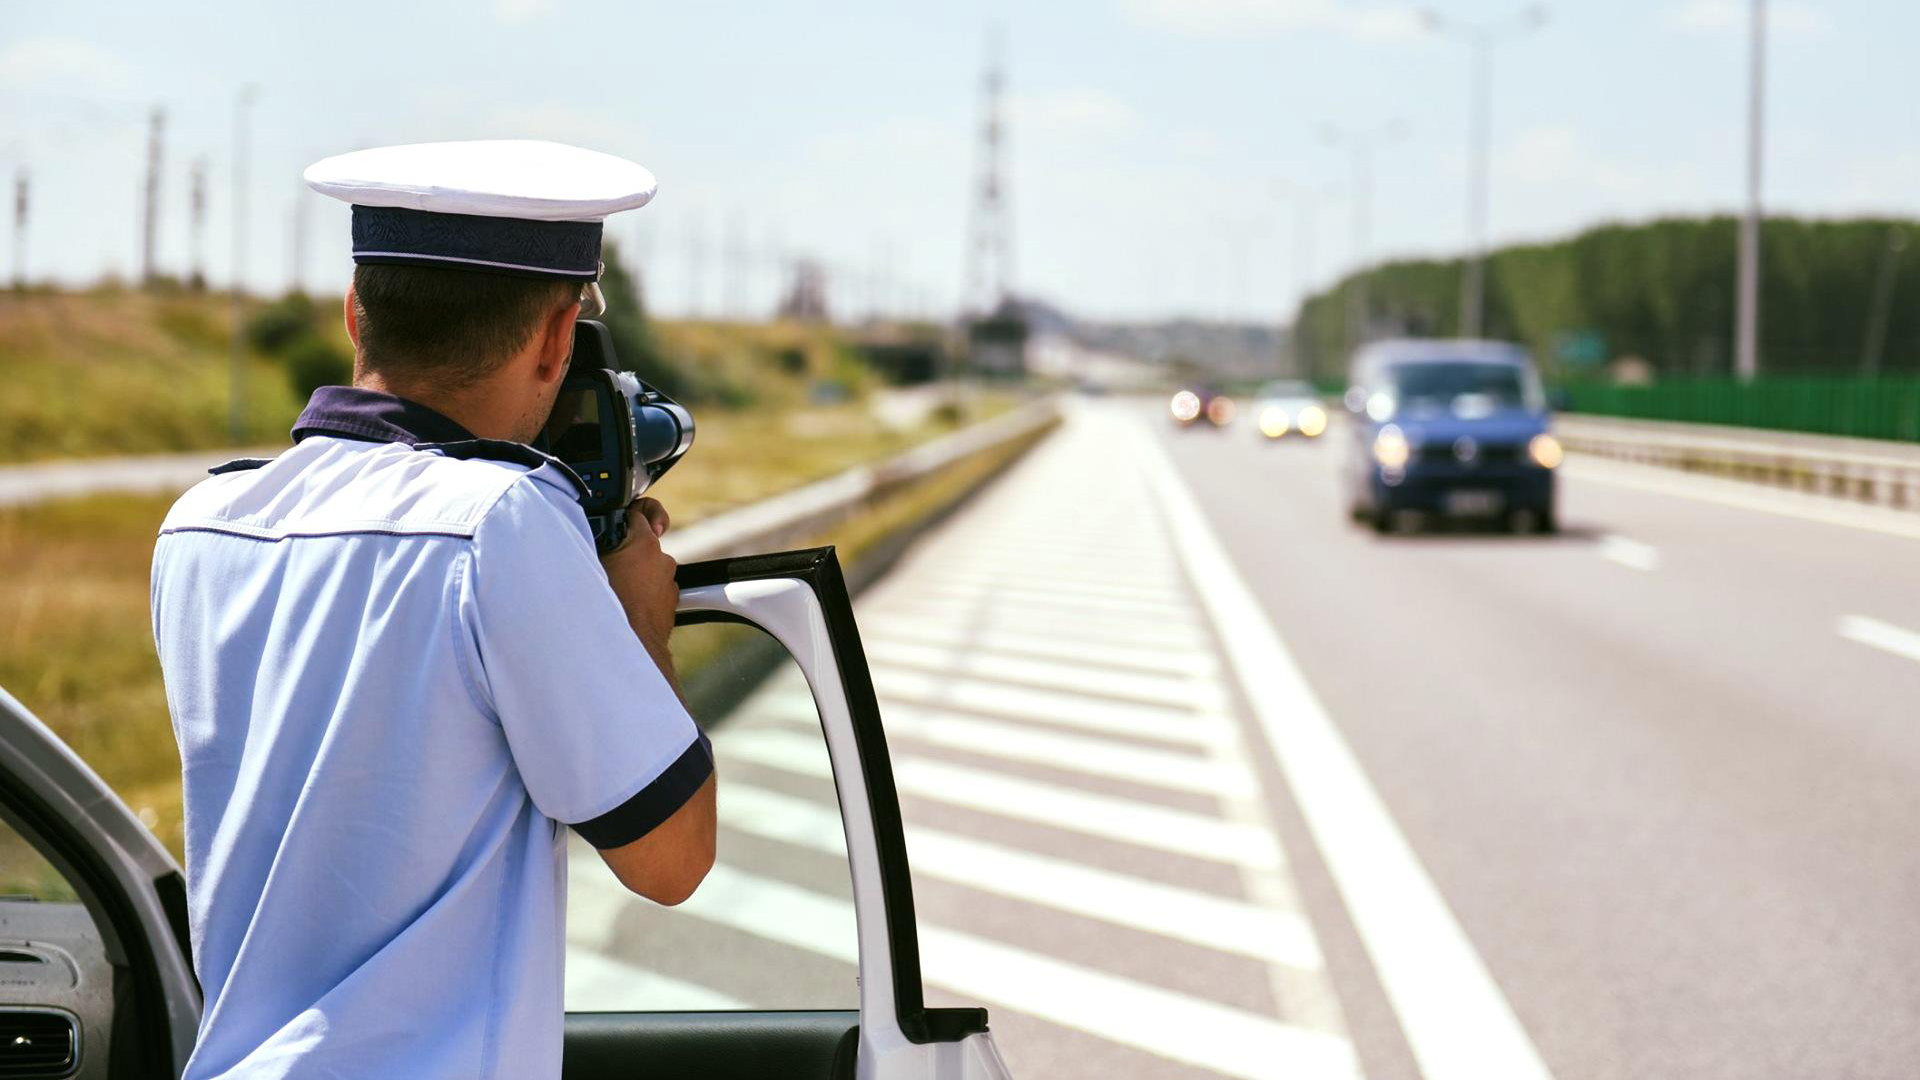 Bírságolásra kényszerítenék a közlekedési rendőröket?